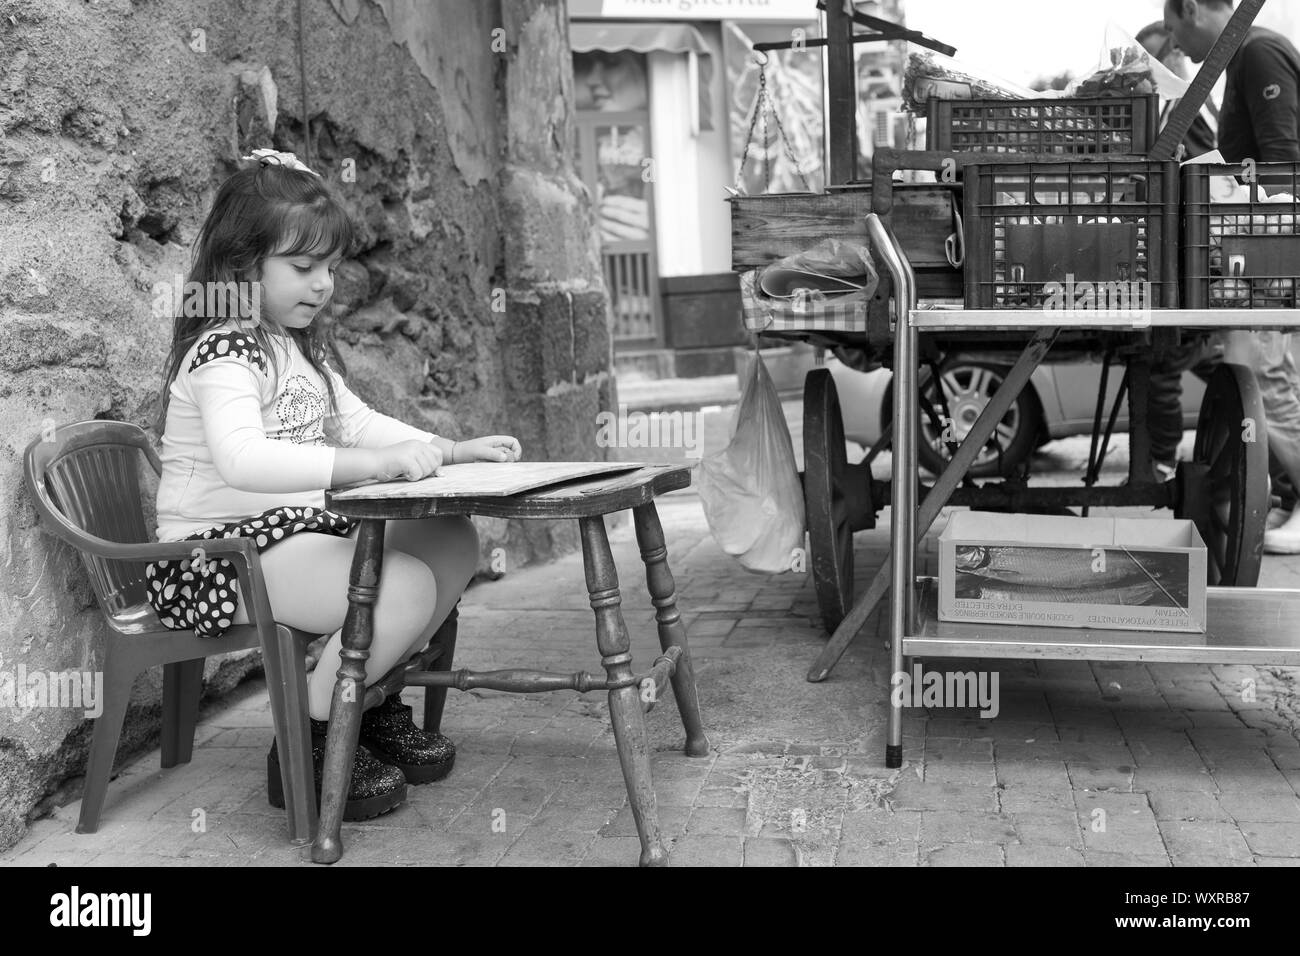 Catania/Italien - Mädchen auf der Straße, während ihr Vater waren verkauft aus dem Stall. Schwarz-weiß Foto. Stockfoto